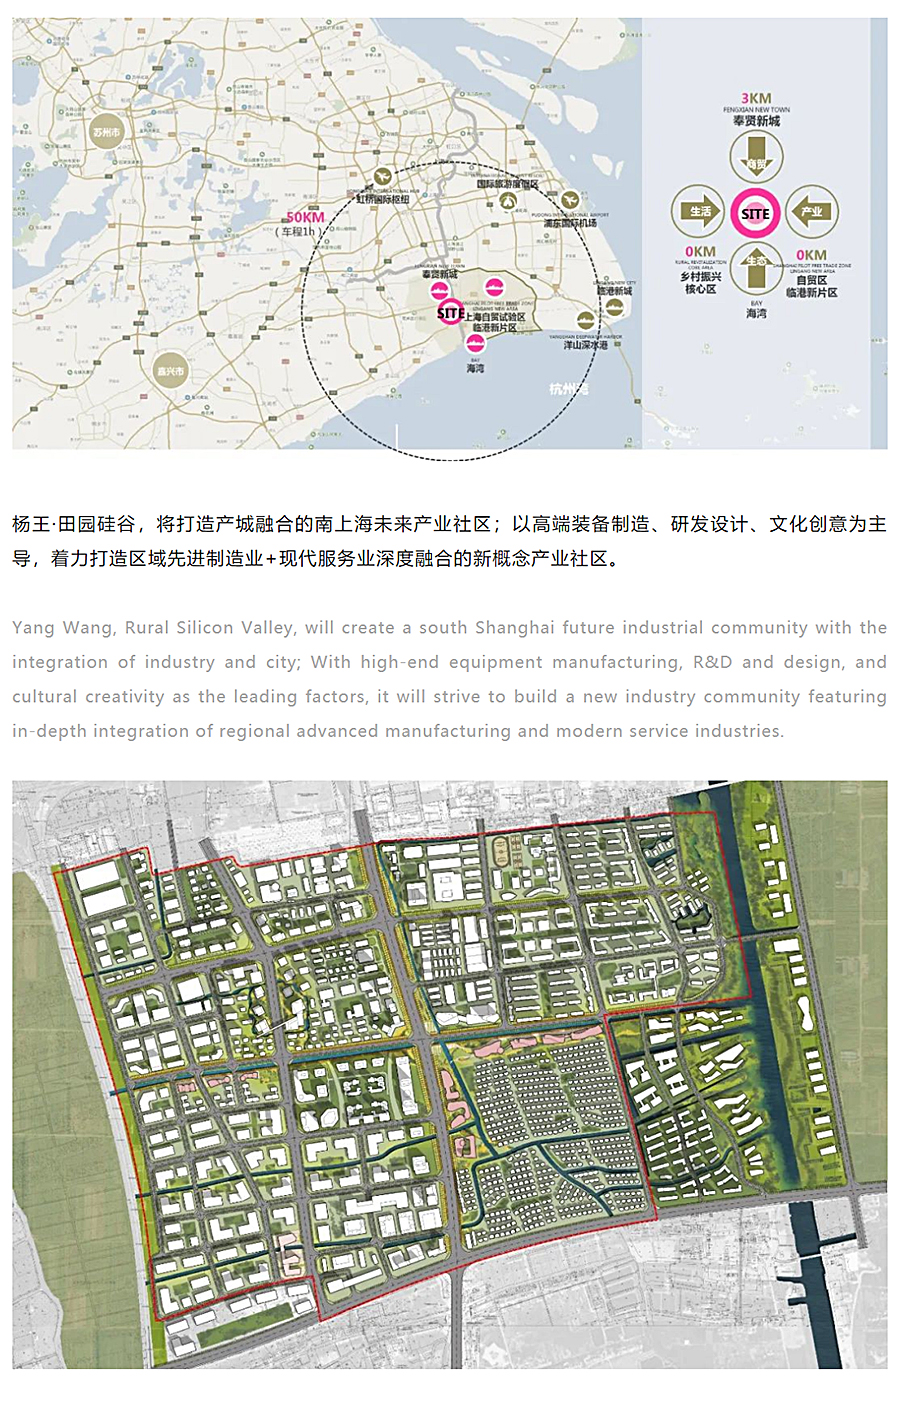 杨王产业园转型概念规划设计-_-万品设计-2020-REARD大奖项目赏析_0002_图层-3.jpg